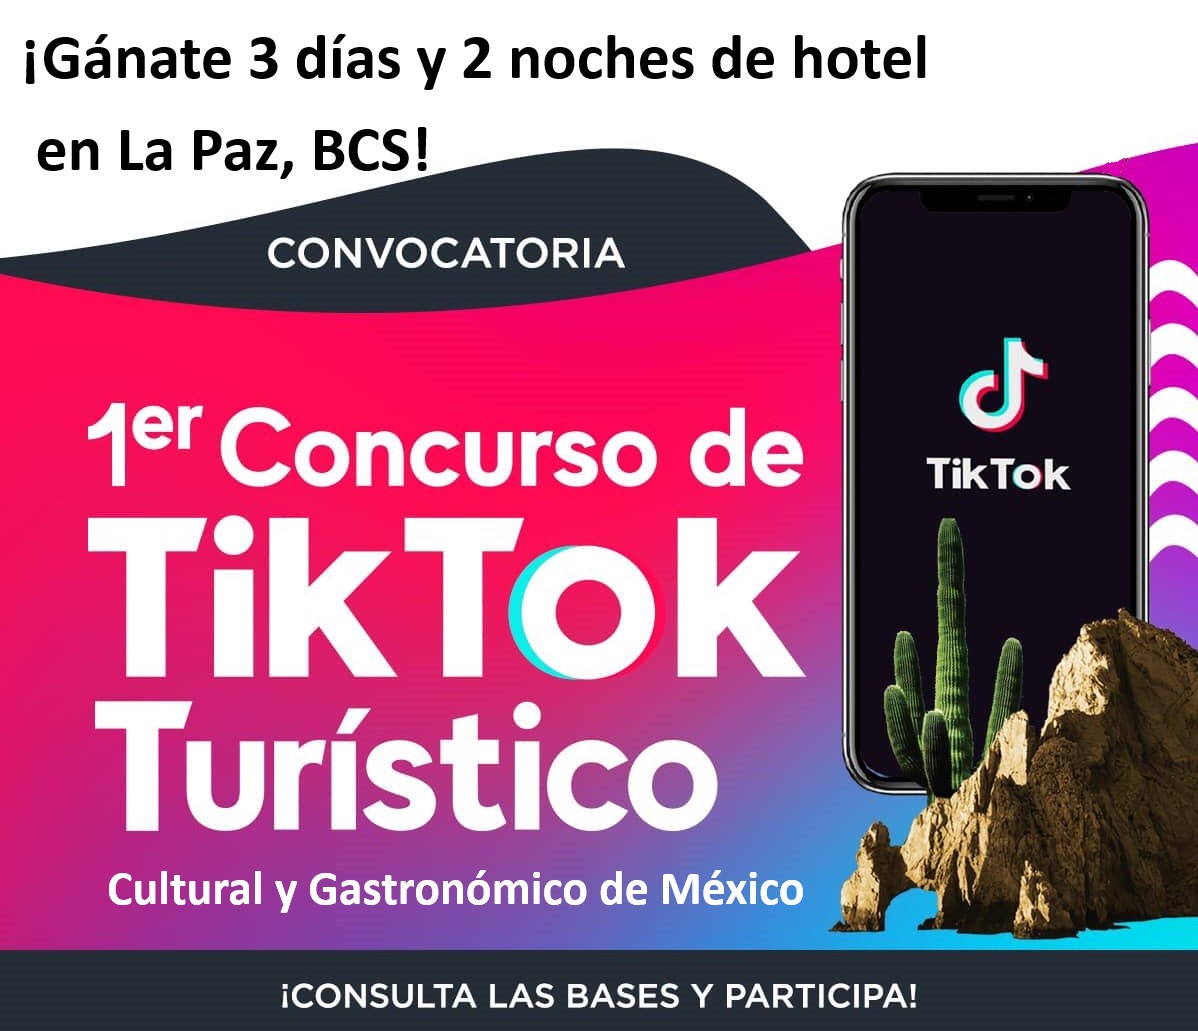 #VisitaBCS ¡Participa en el primer concurso turístico TikTok, y vete de vacaciones a Baja California Sur! Consulta las bases: